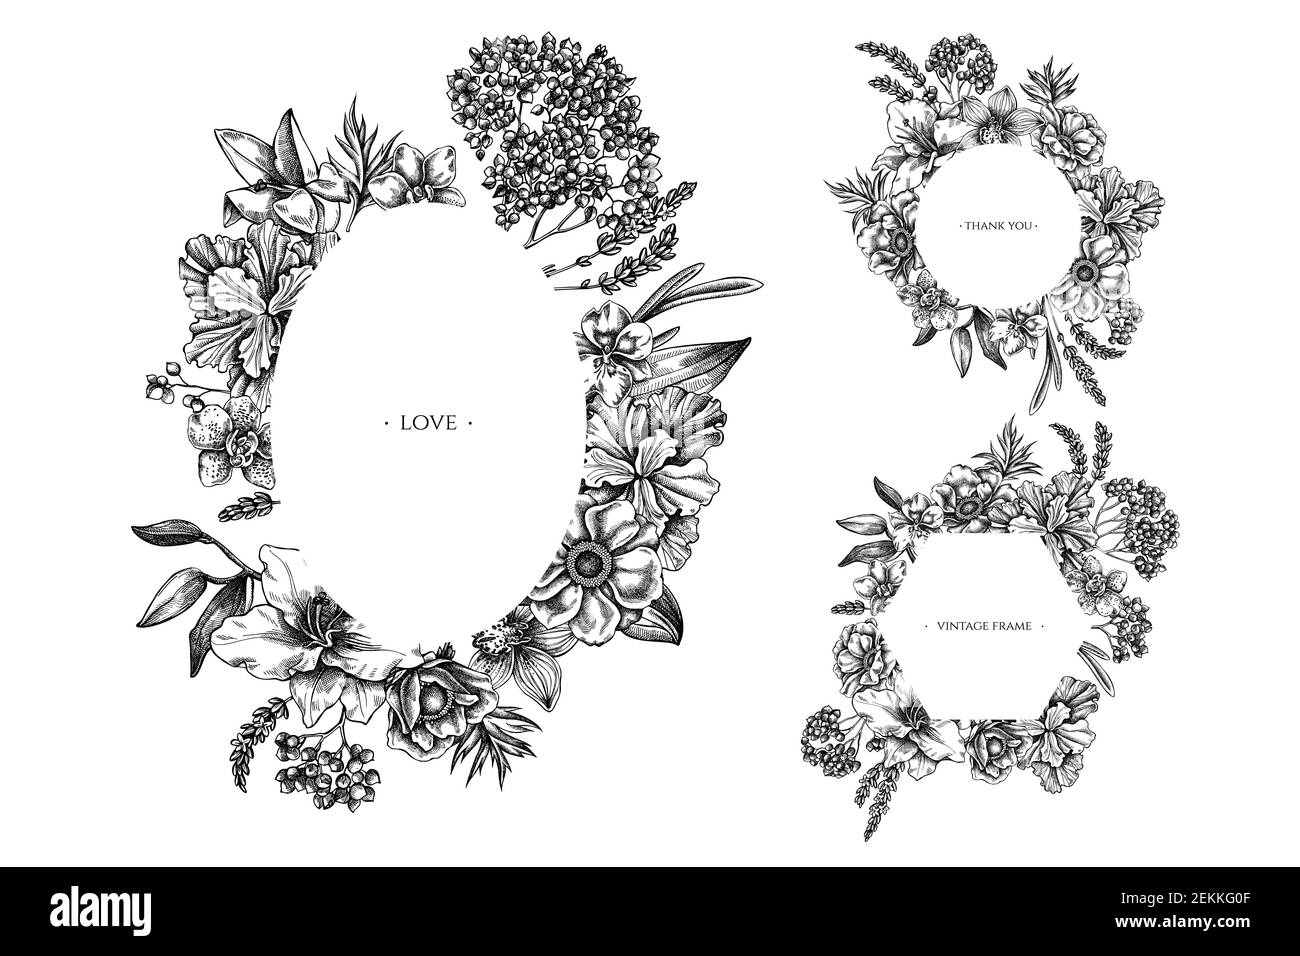 Blumenrahmen mit schwarz-weißen Anemone, Lavendel, Rosmarin Everlasting, phalaenopsis, Lilie, iris Stock Vektor